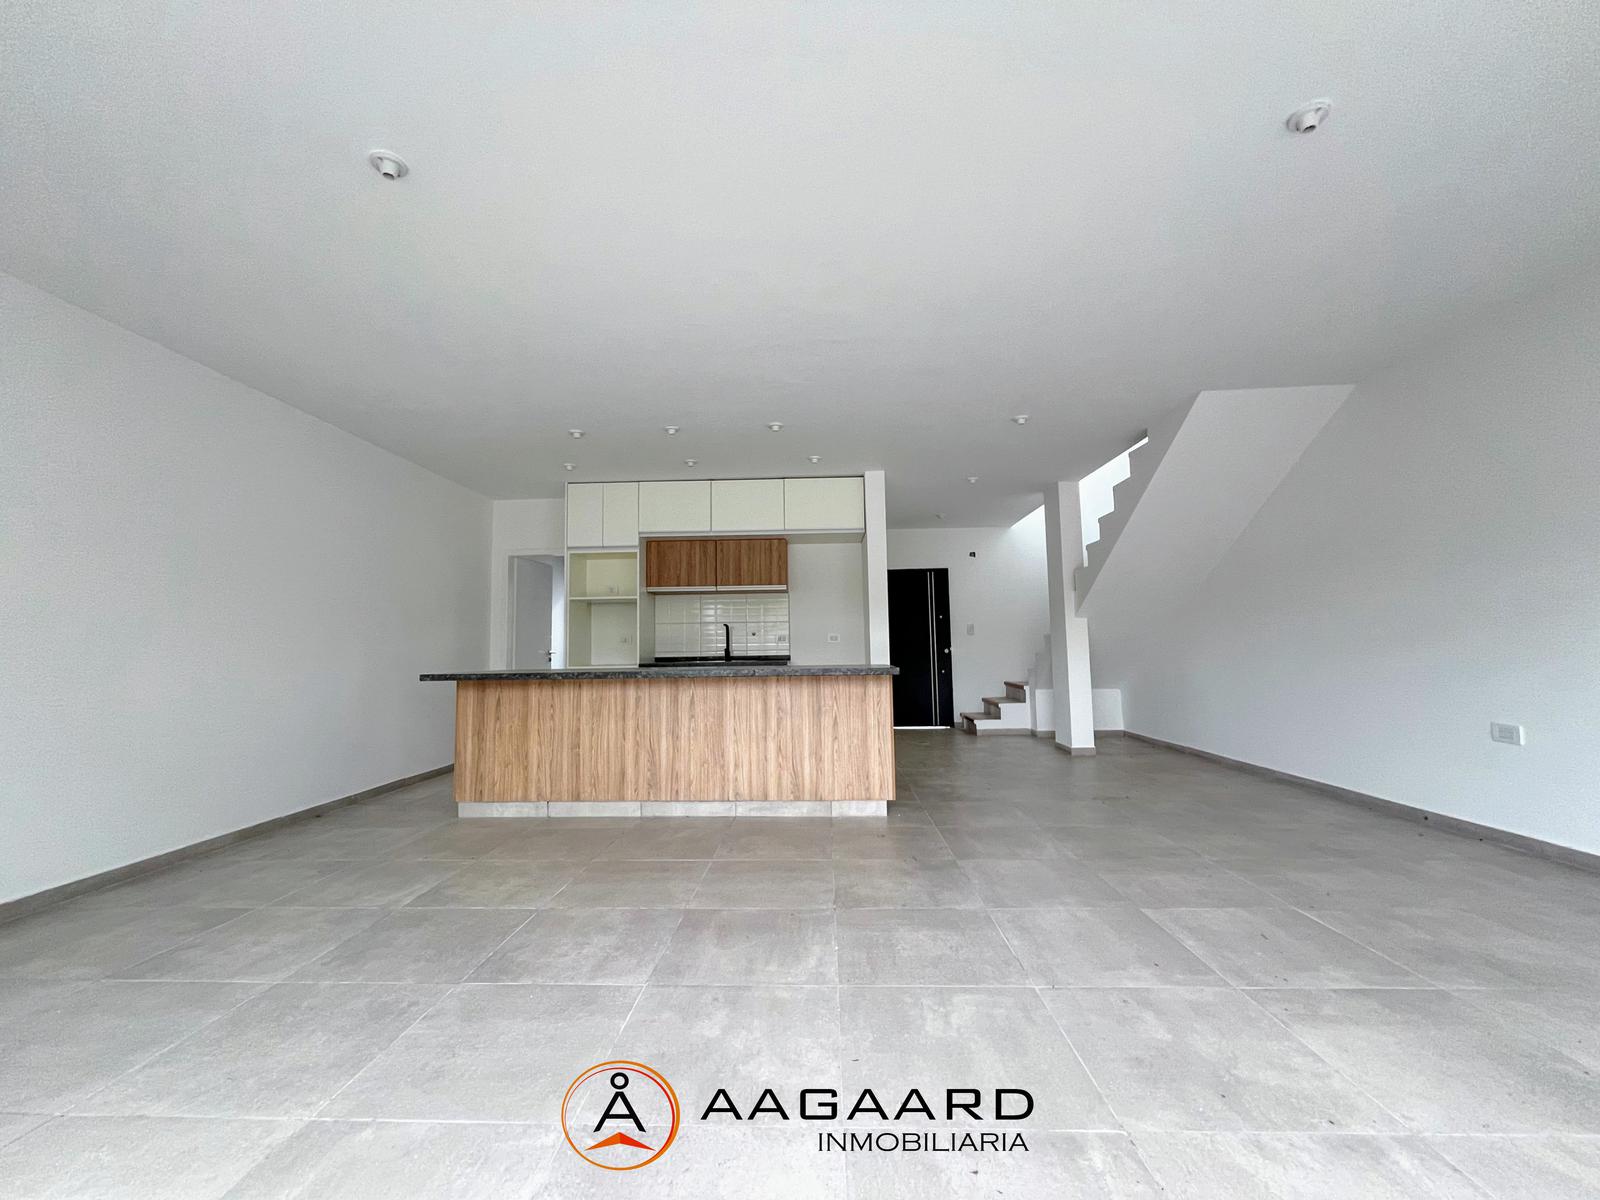 #5025838 | Sale | Horizontal Property | Altos de Manantiales (AAGAARD INMOBILIARIA)